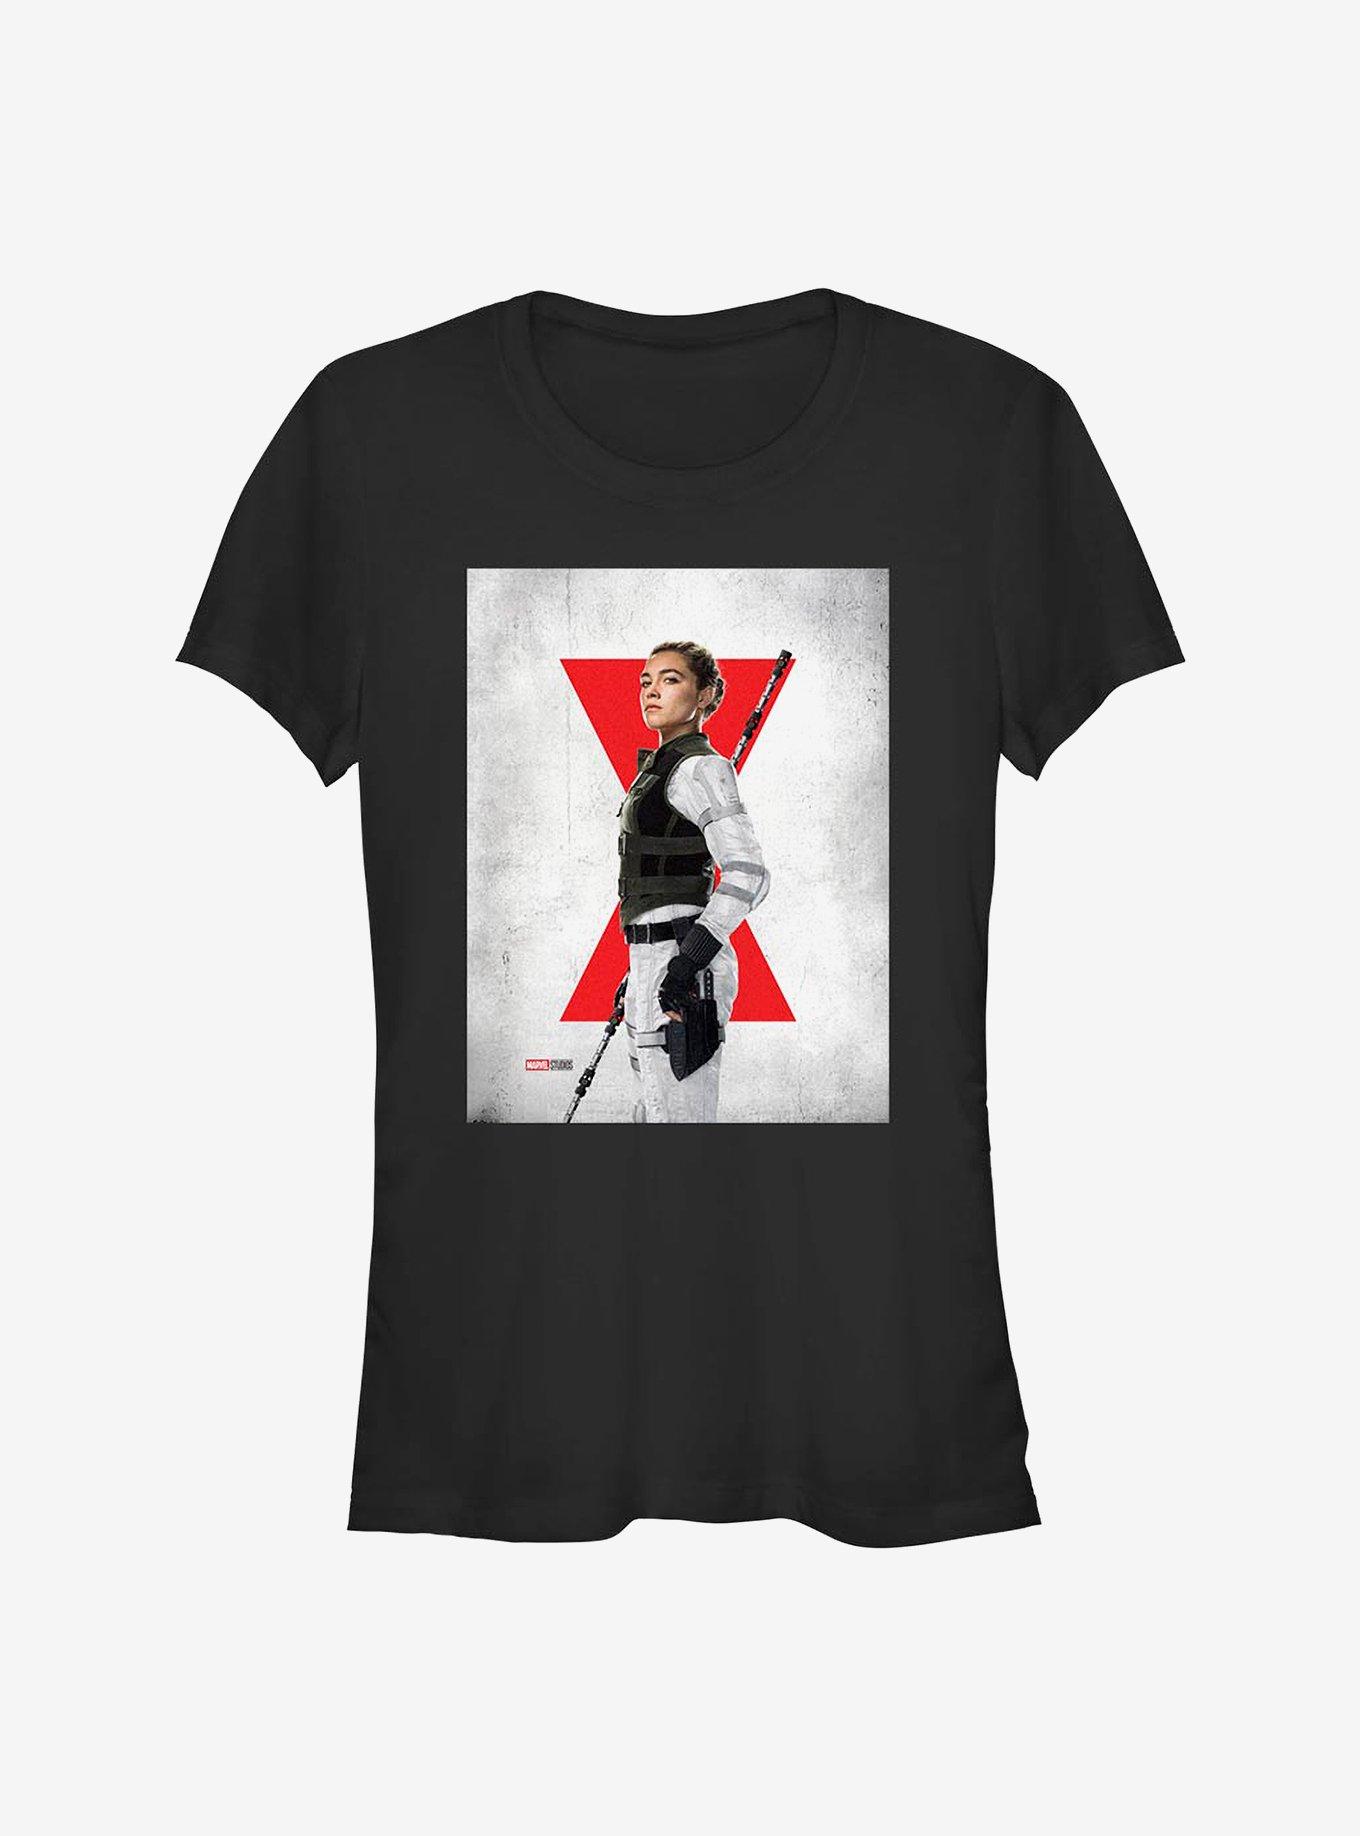 Marvel Black Widow Yelena Poster Girls T-Shirt